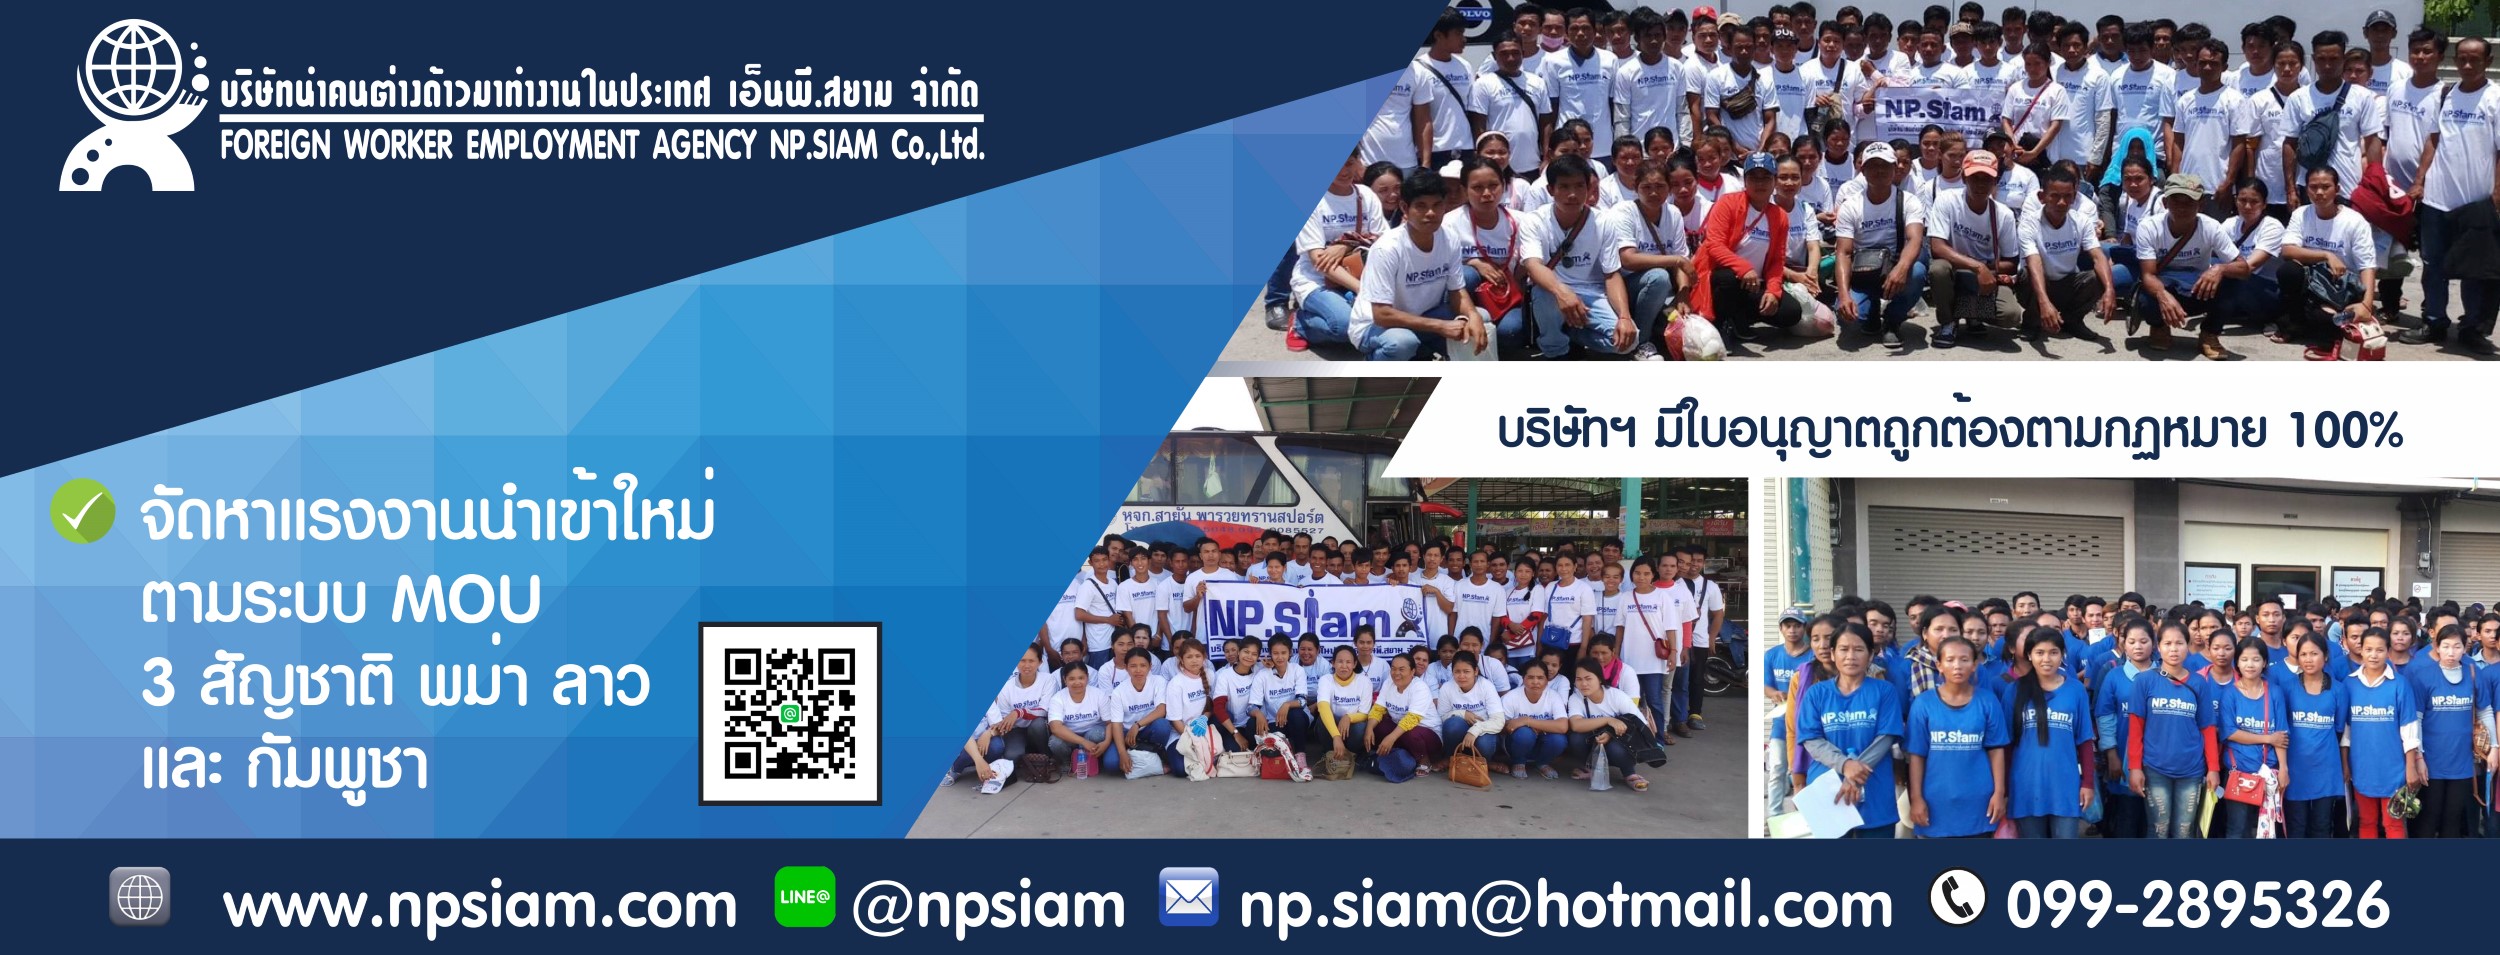 1. NPSIAM บริษัท นำคนต่างด้าวมาทำงานในประเทศ